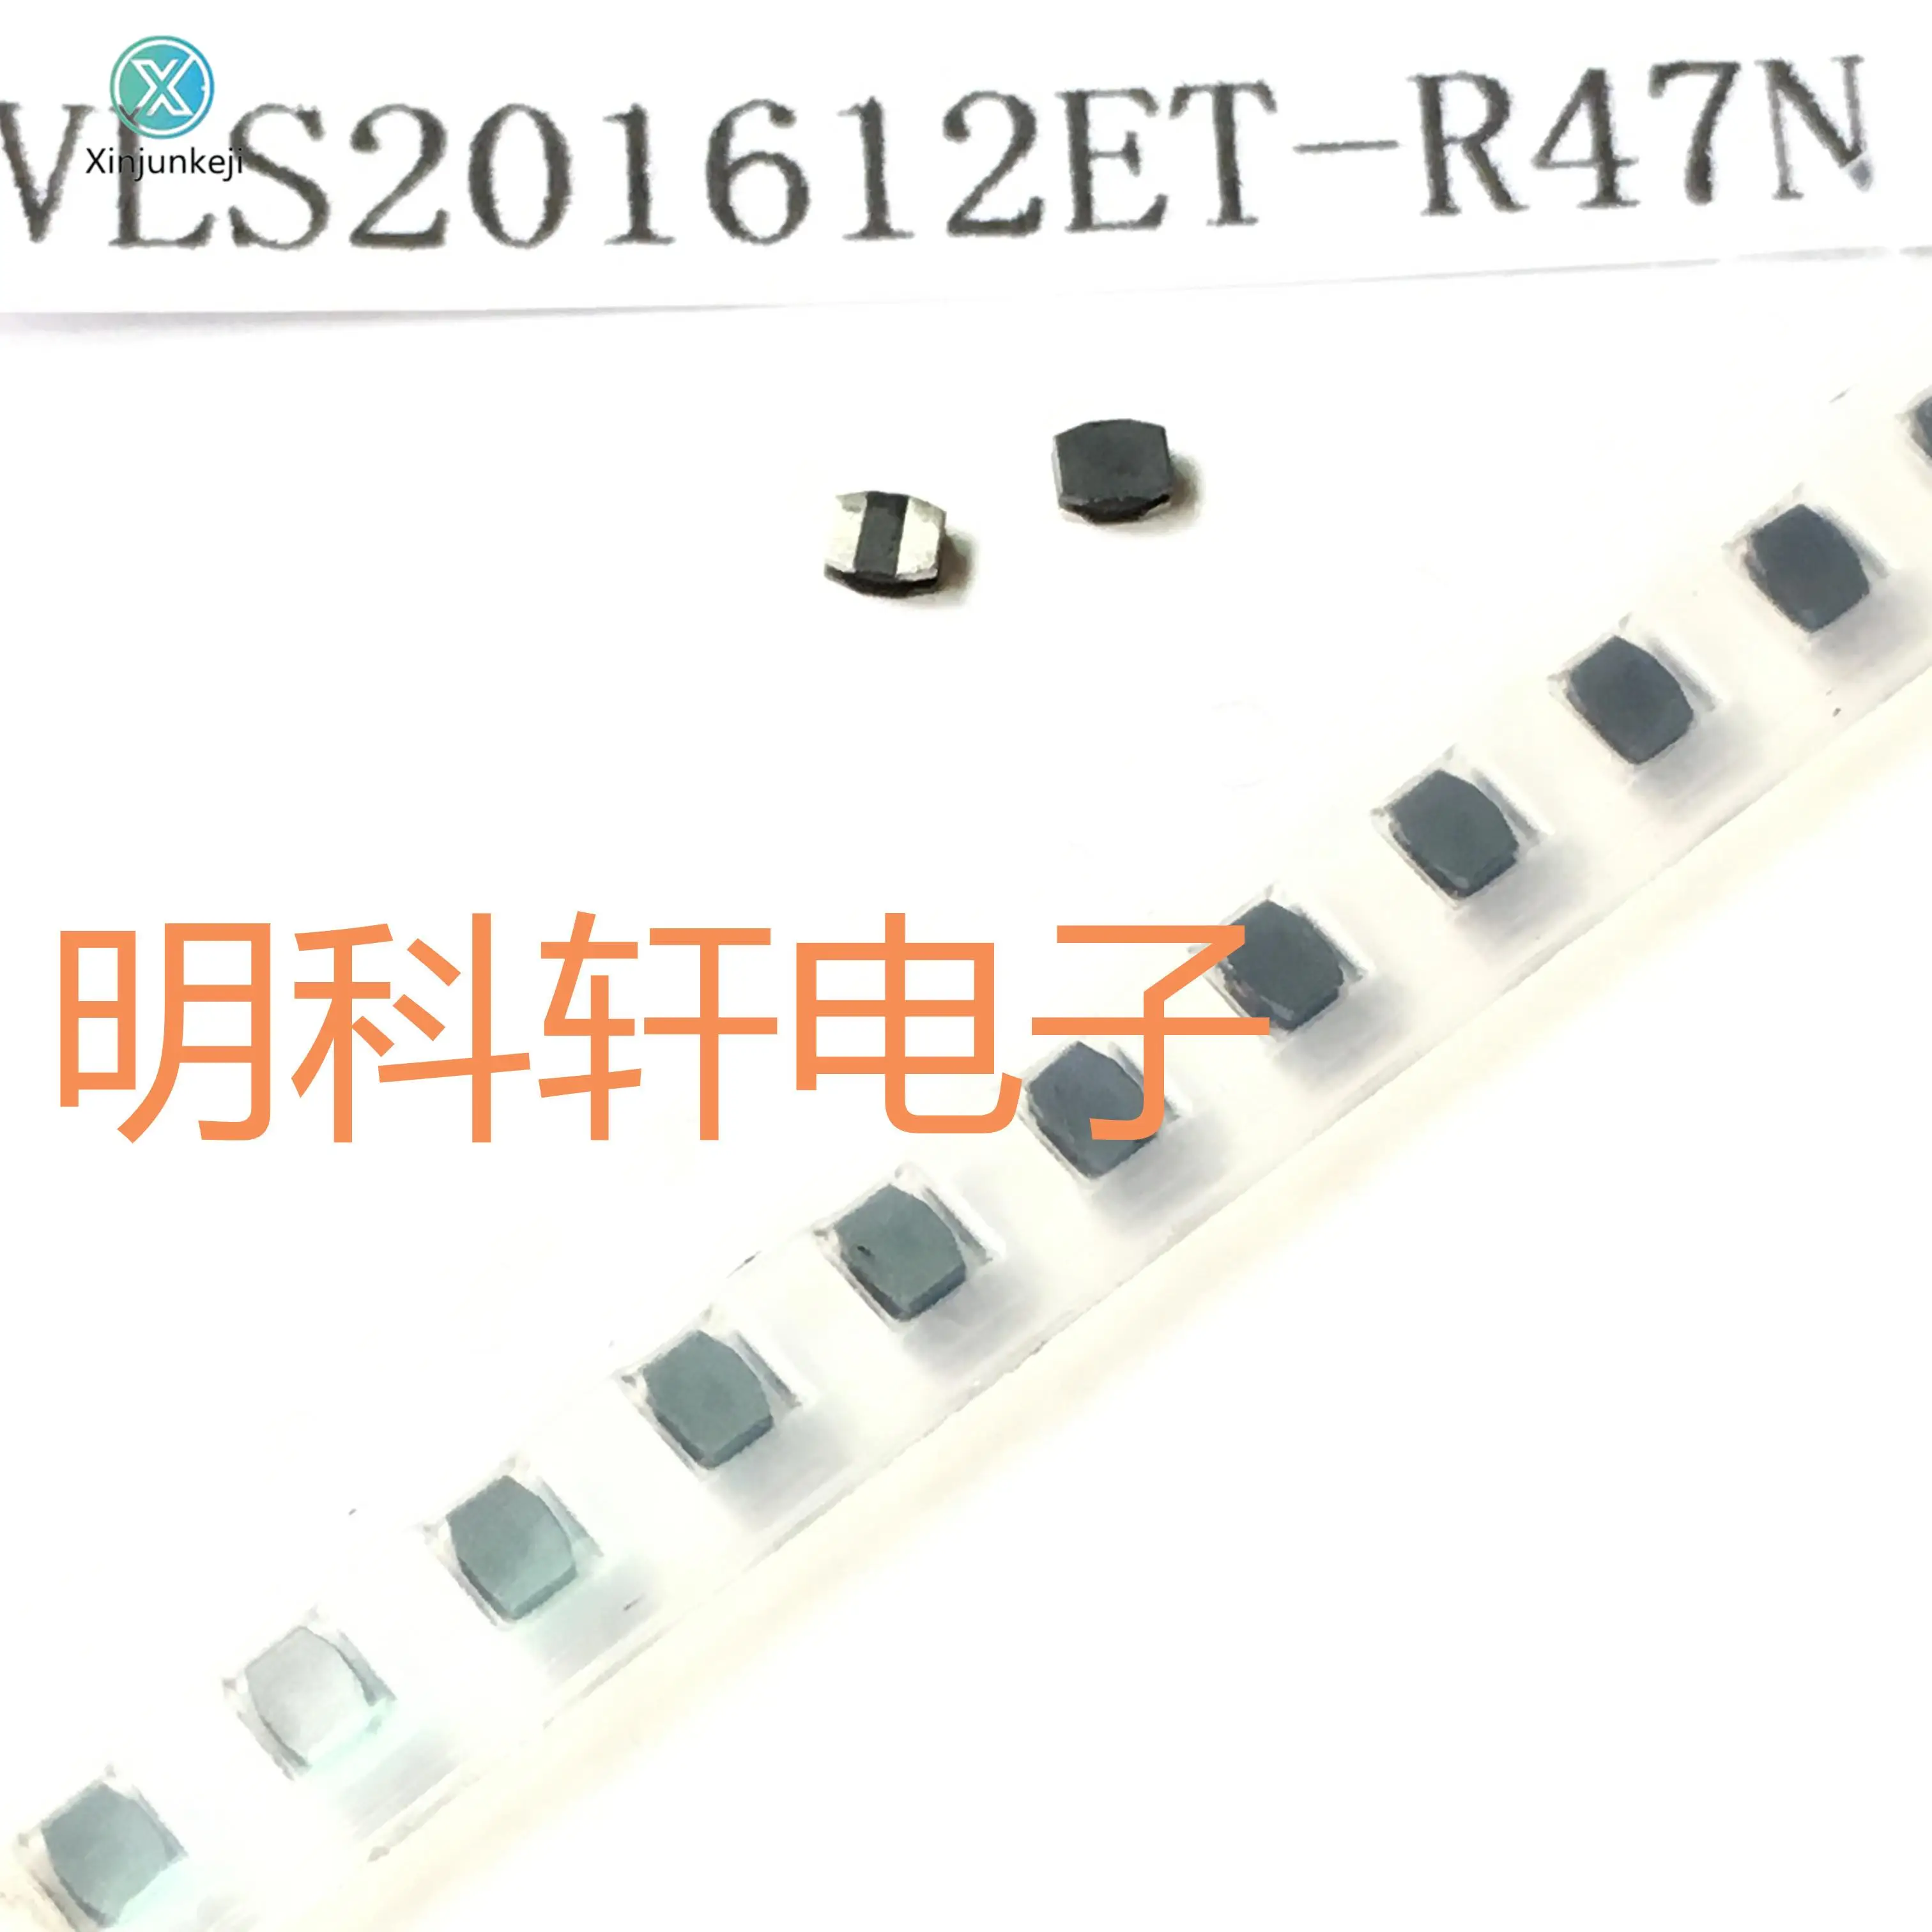 

30pcs orginal new VLS201612ET-R47N SMD power inductor 0.47UH 2.0*1.6*1.2